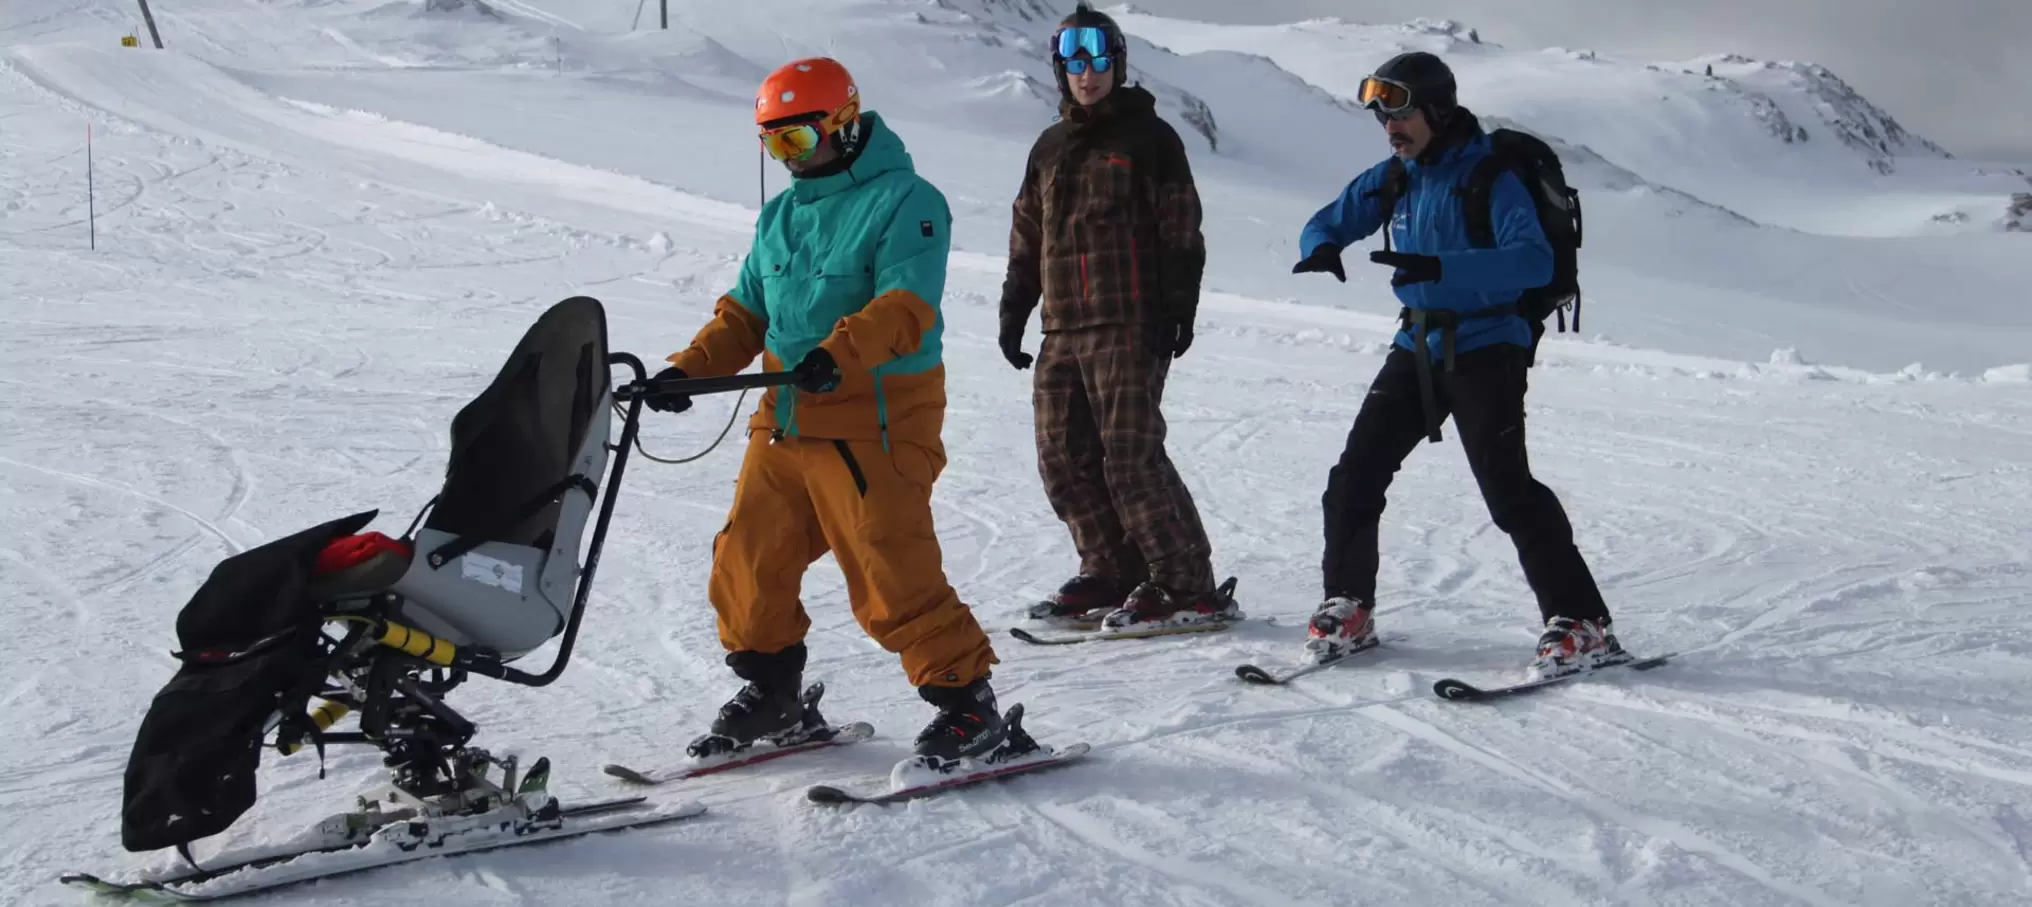 Schneesport Behindertensportausbildung fokussiert auf jede Zielgruppe und jede Schneesportdisziplin